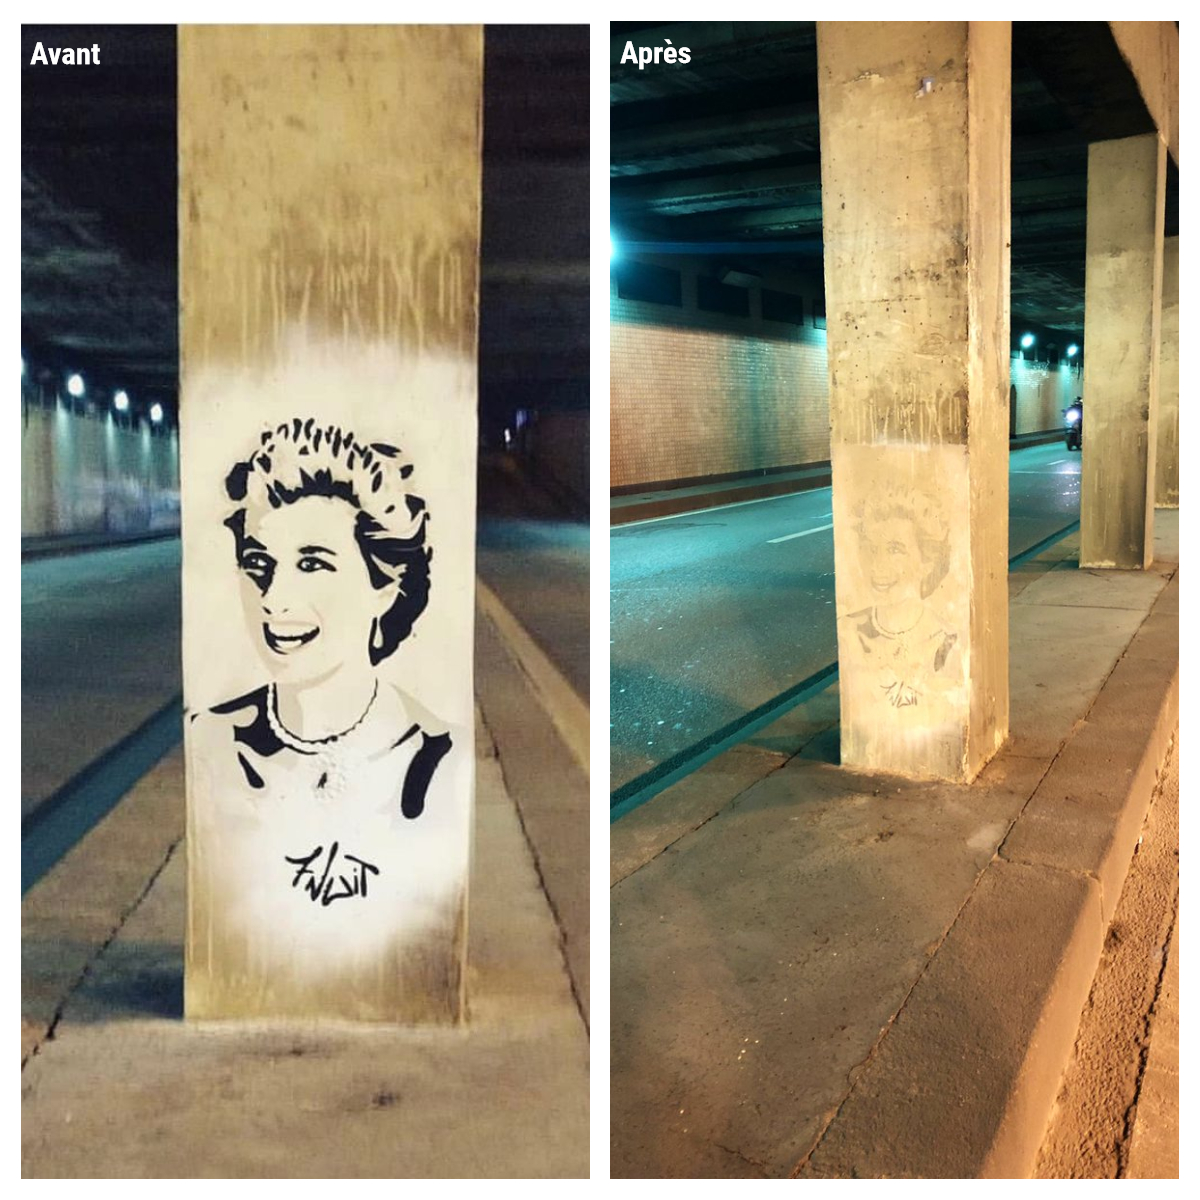 La fresque en hommage à Lady Diana pont de l'Alma dégradée